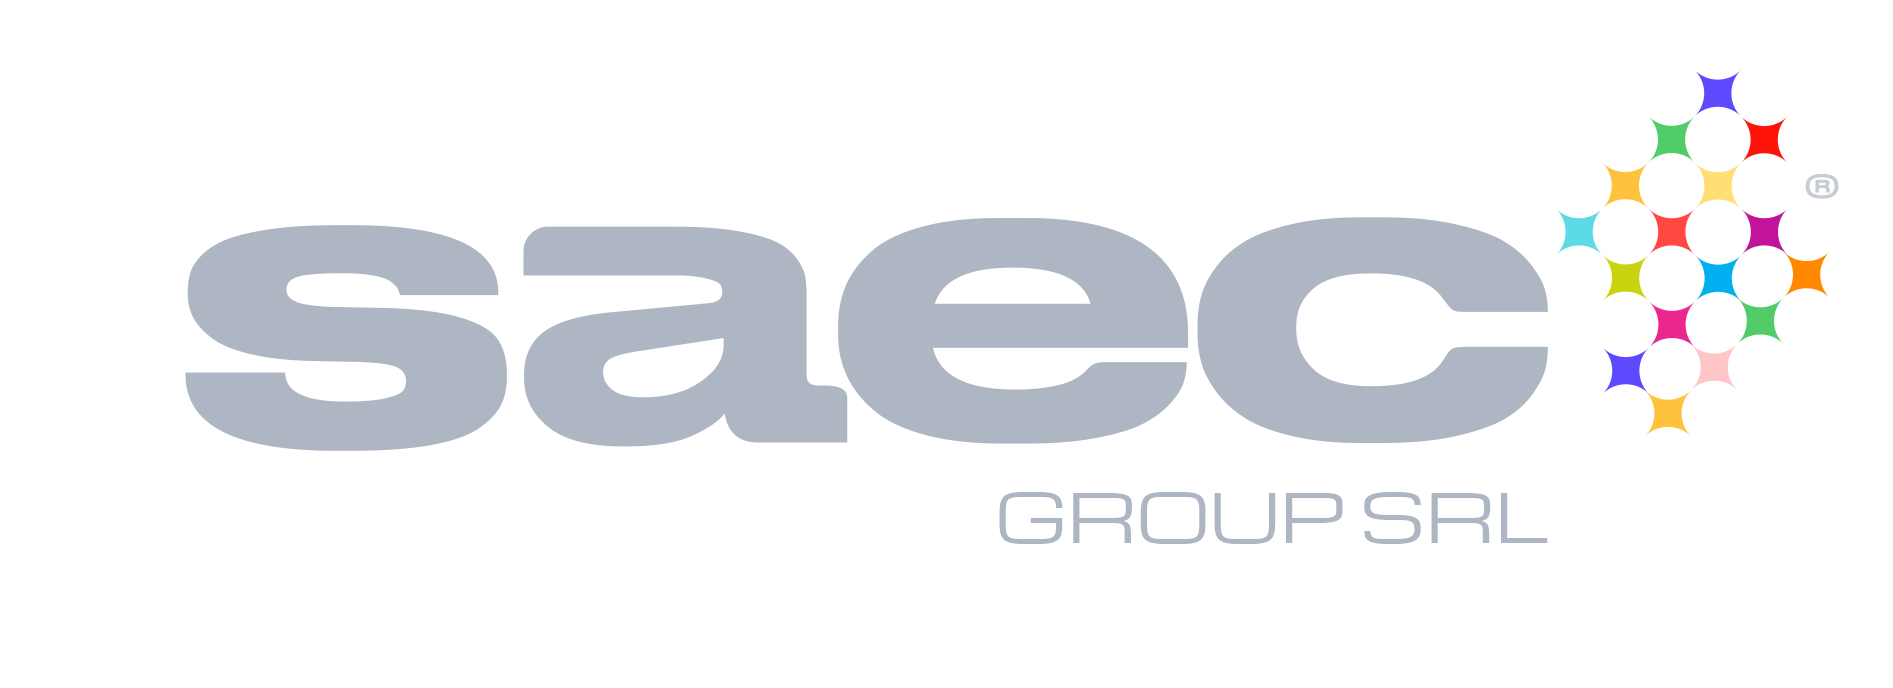 Saec Group Srl-logo